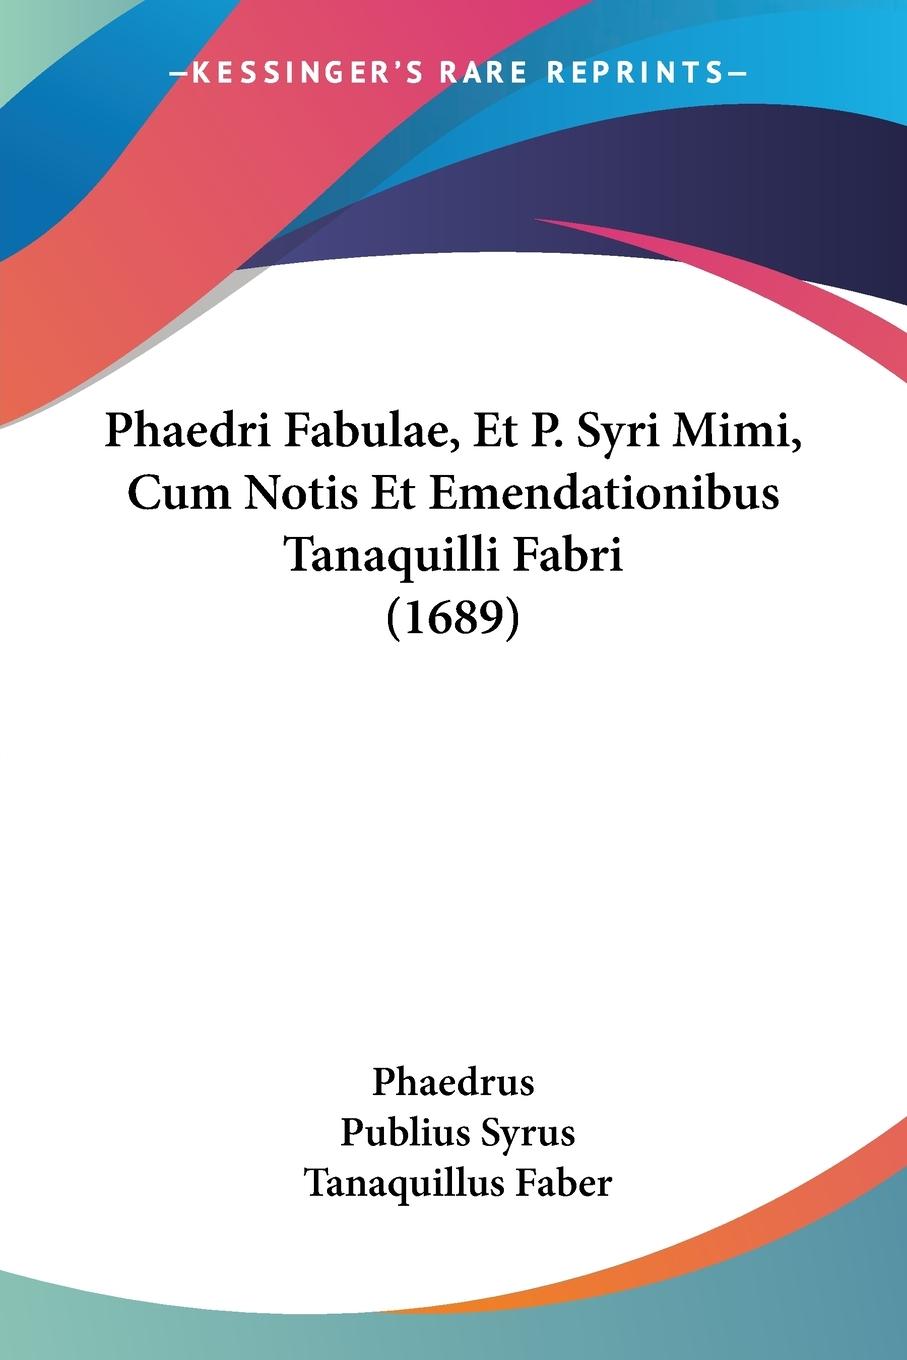 Phaedri Fabulae, Et P. Syri Mimi, Cum Notis Et Emendationibus Tanaquilli Fabri (1689) - Phaedrus Syrus, Publius Faber, Tanaquillus